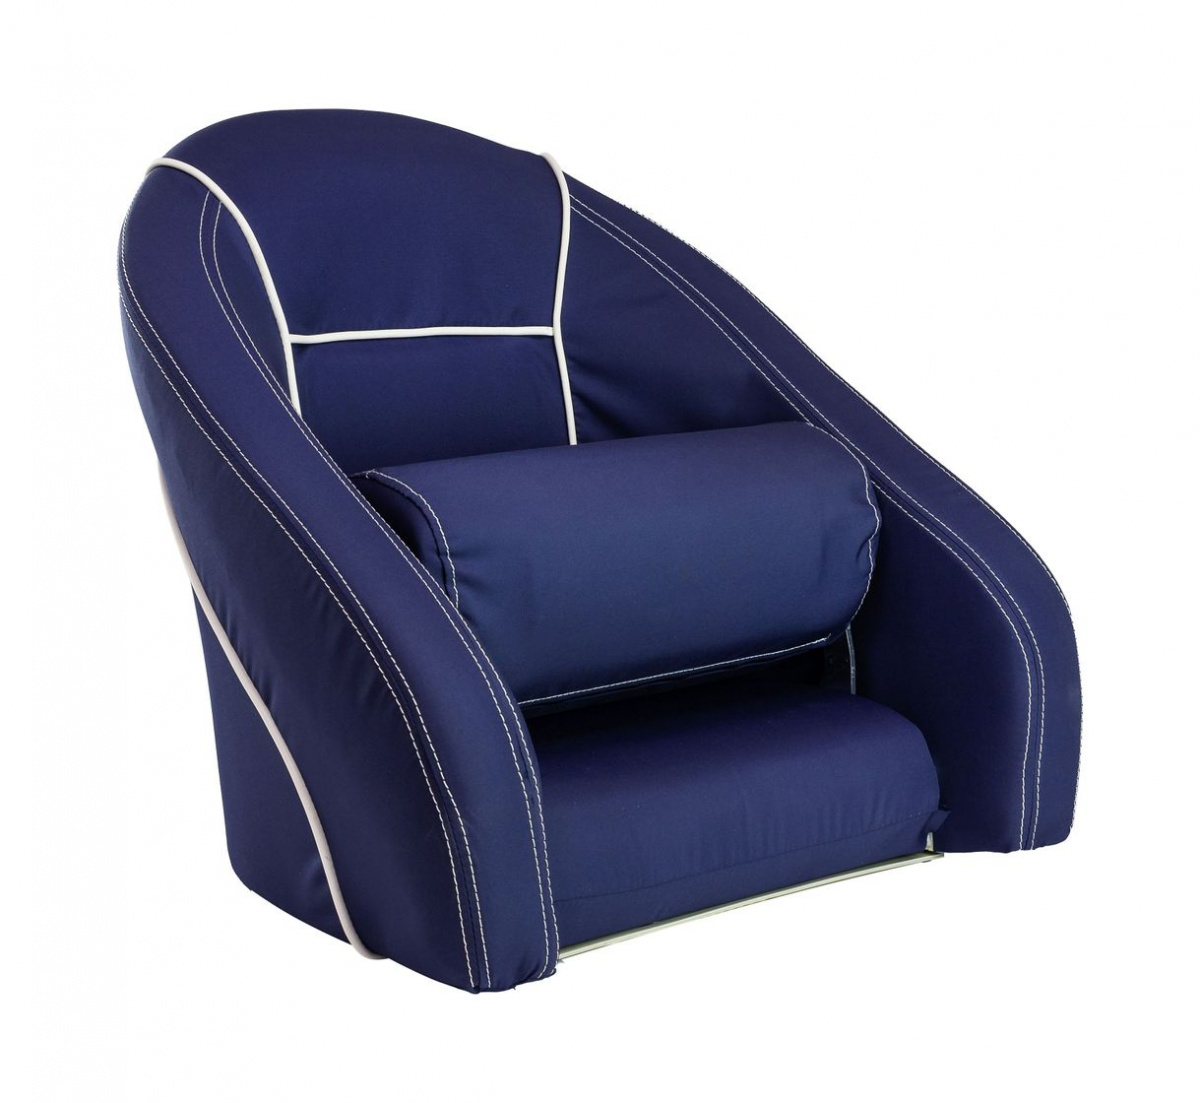 Кресло ROMEO мягкое, подставка, обивка ткань Markilux темно-синяя, 889-7677